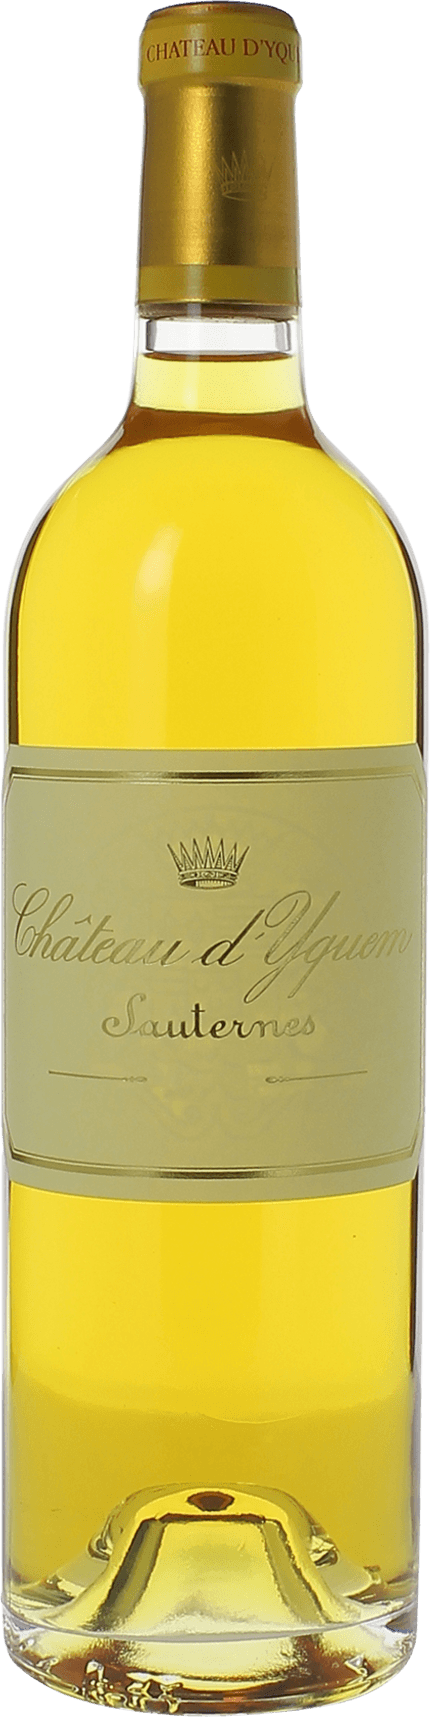 Yquem (disponible dbut fvrier) 1997 1er Grand cru class Sauternes, Bordeaux blanc